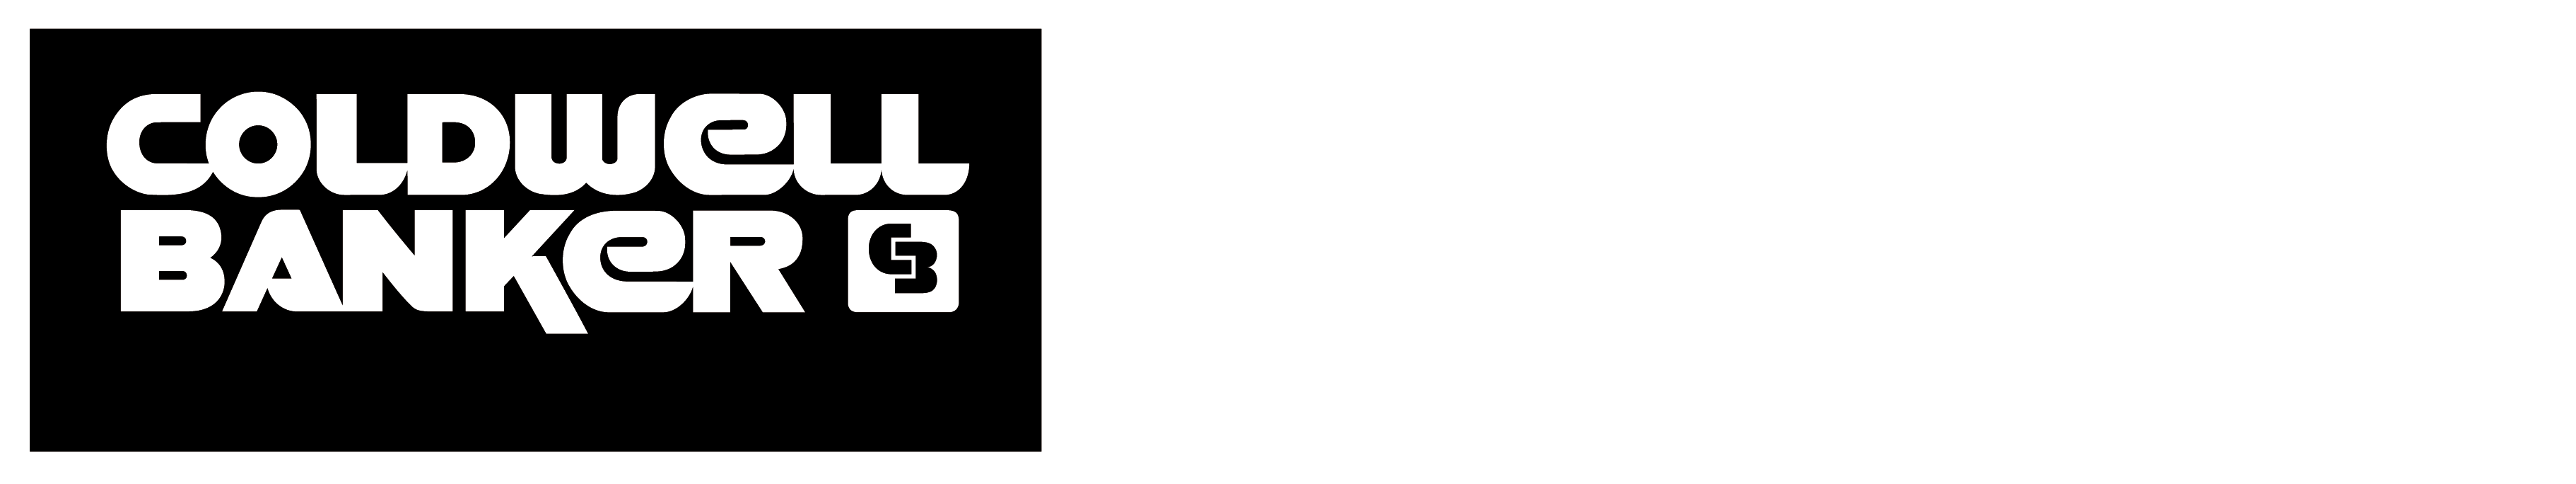 coldwell banker black emblem png logo #5473